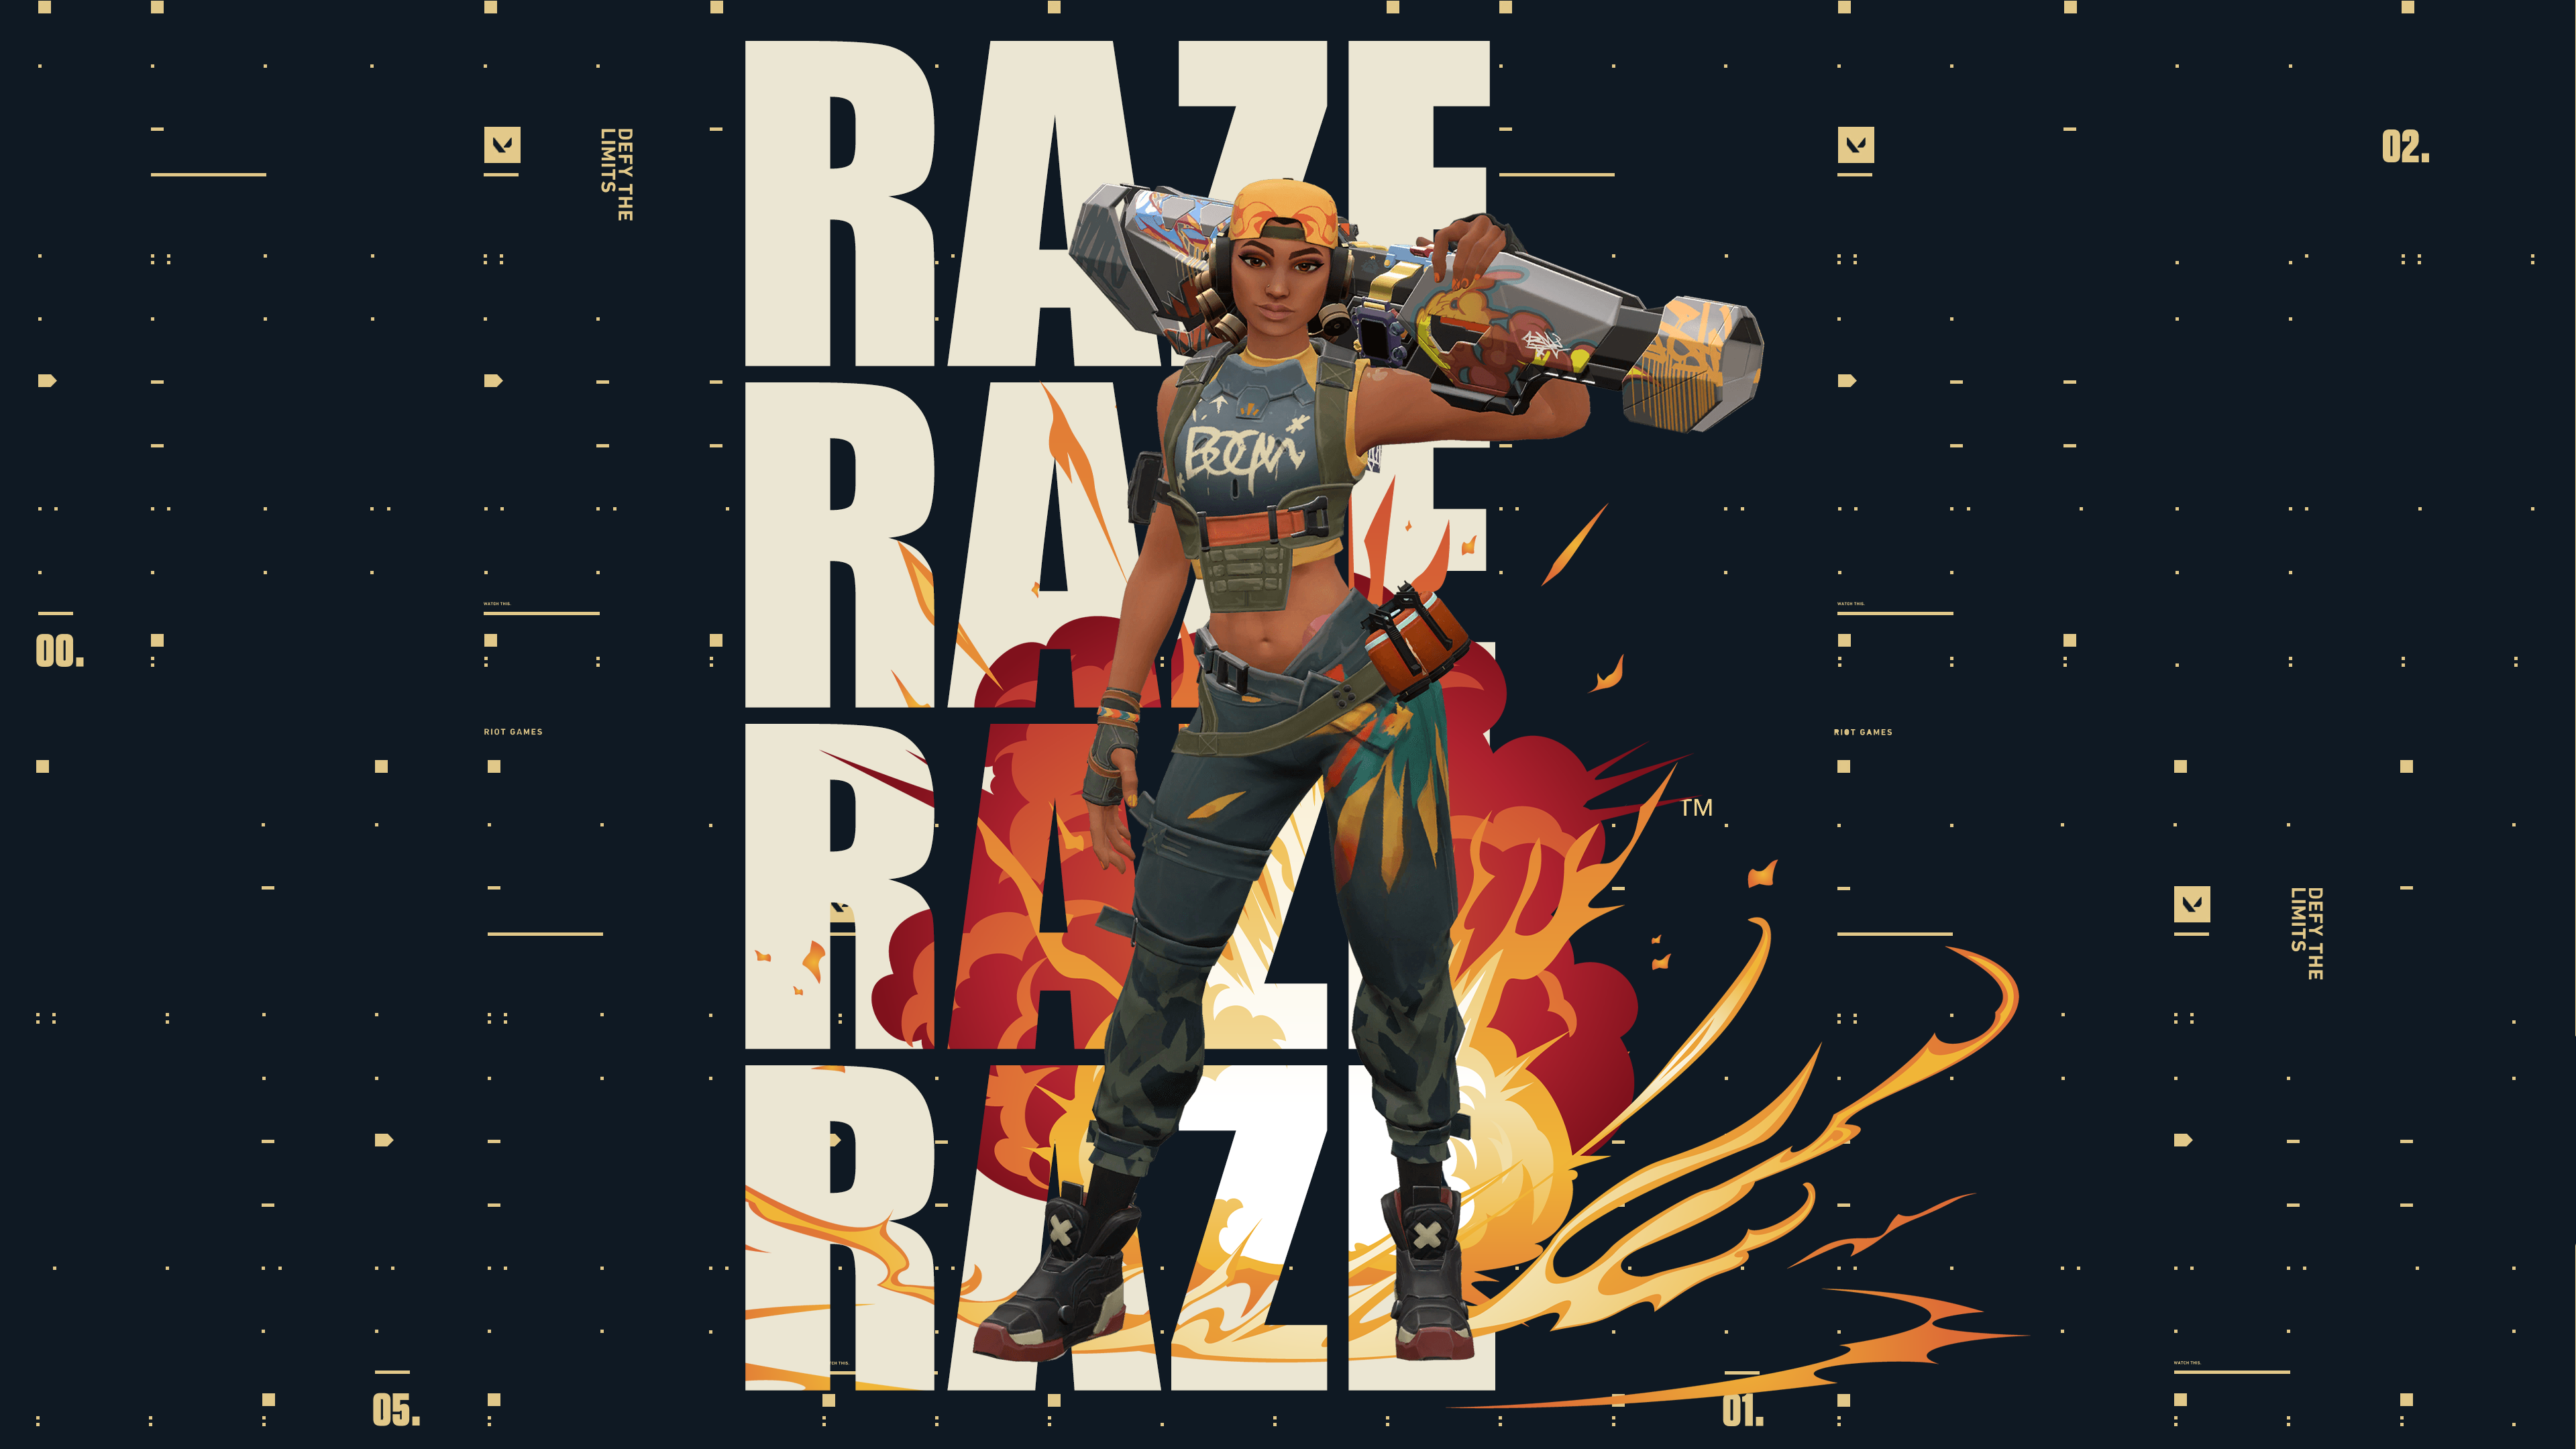 The long awaited Raze Desktop Wallpaper is here! : r/VALORANT